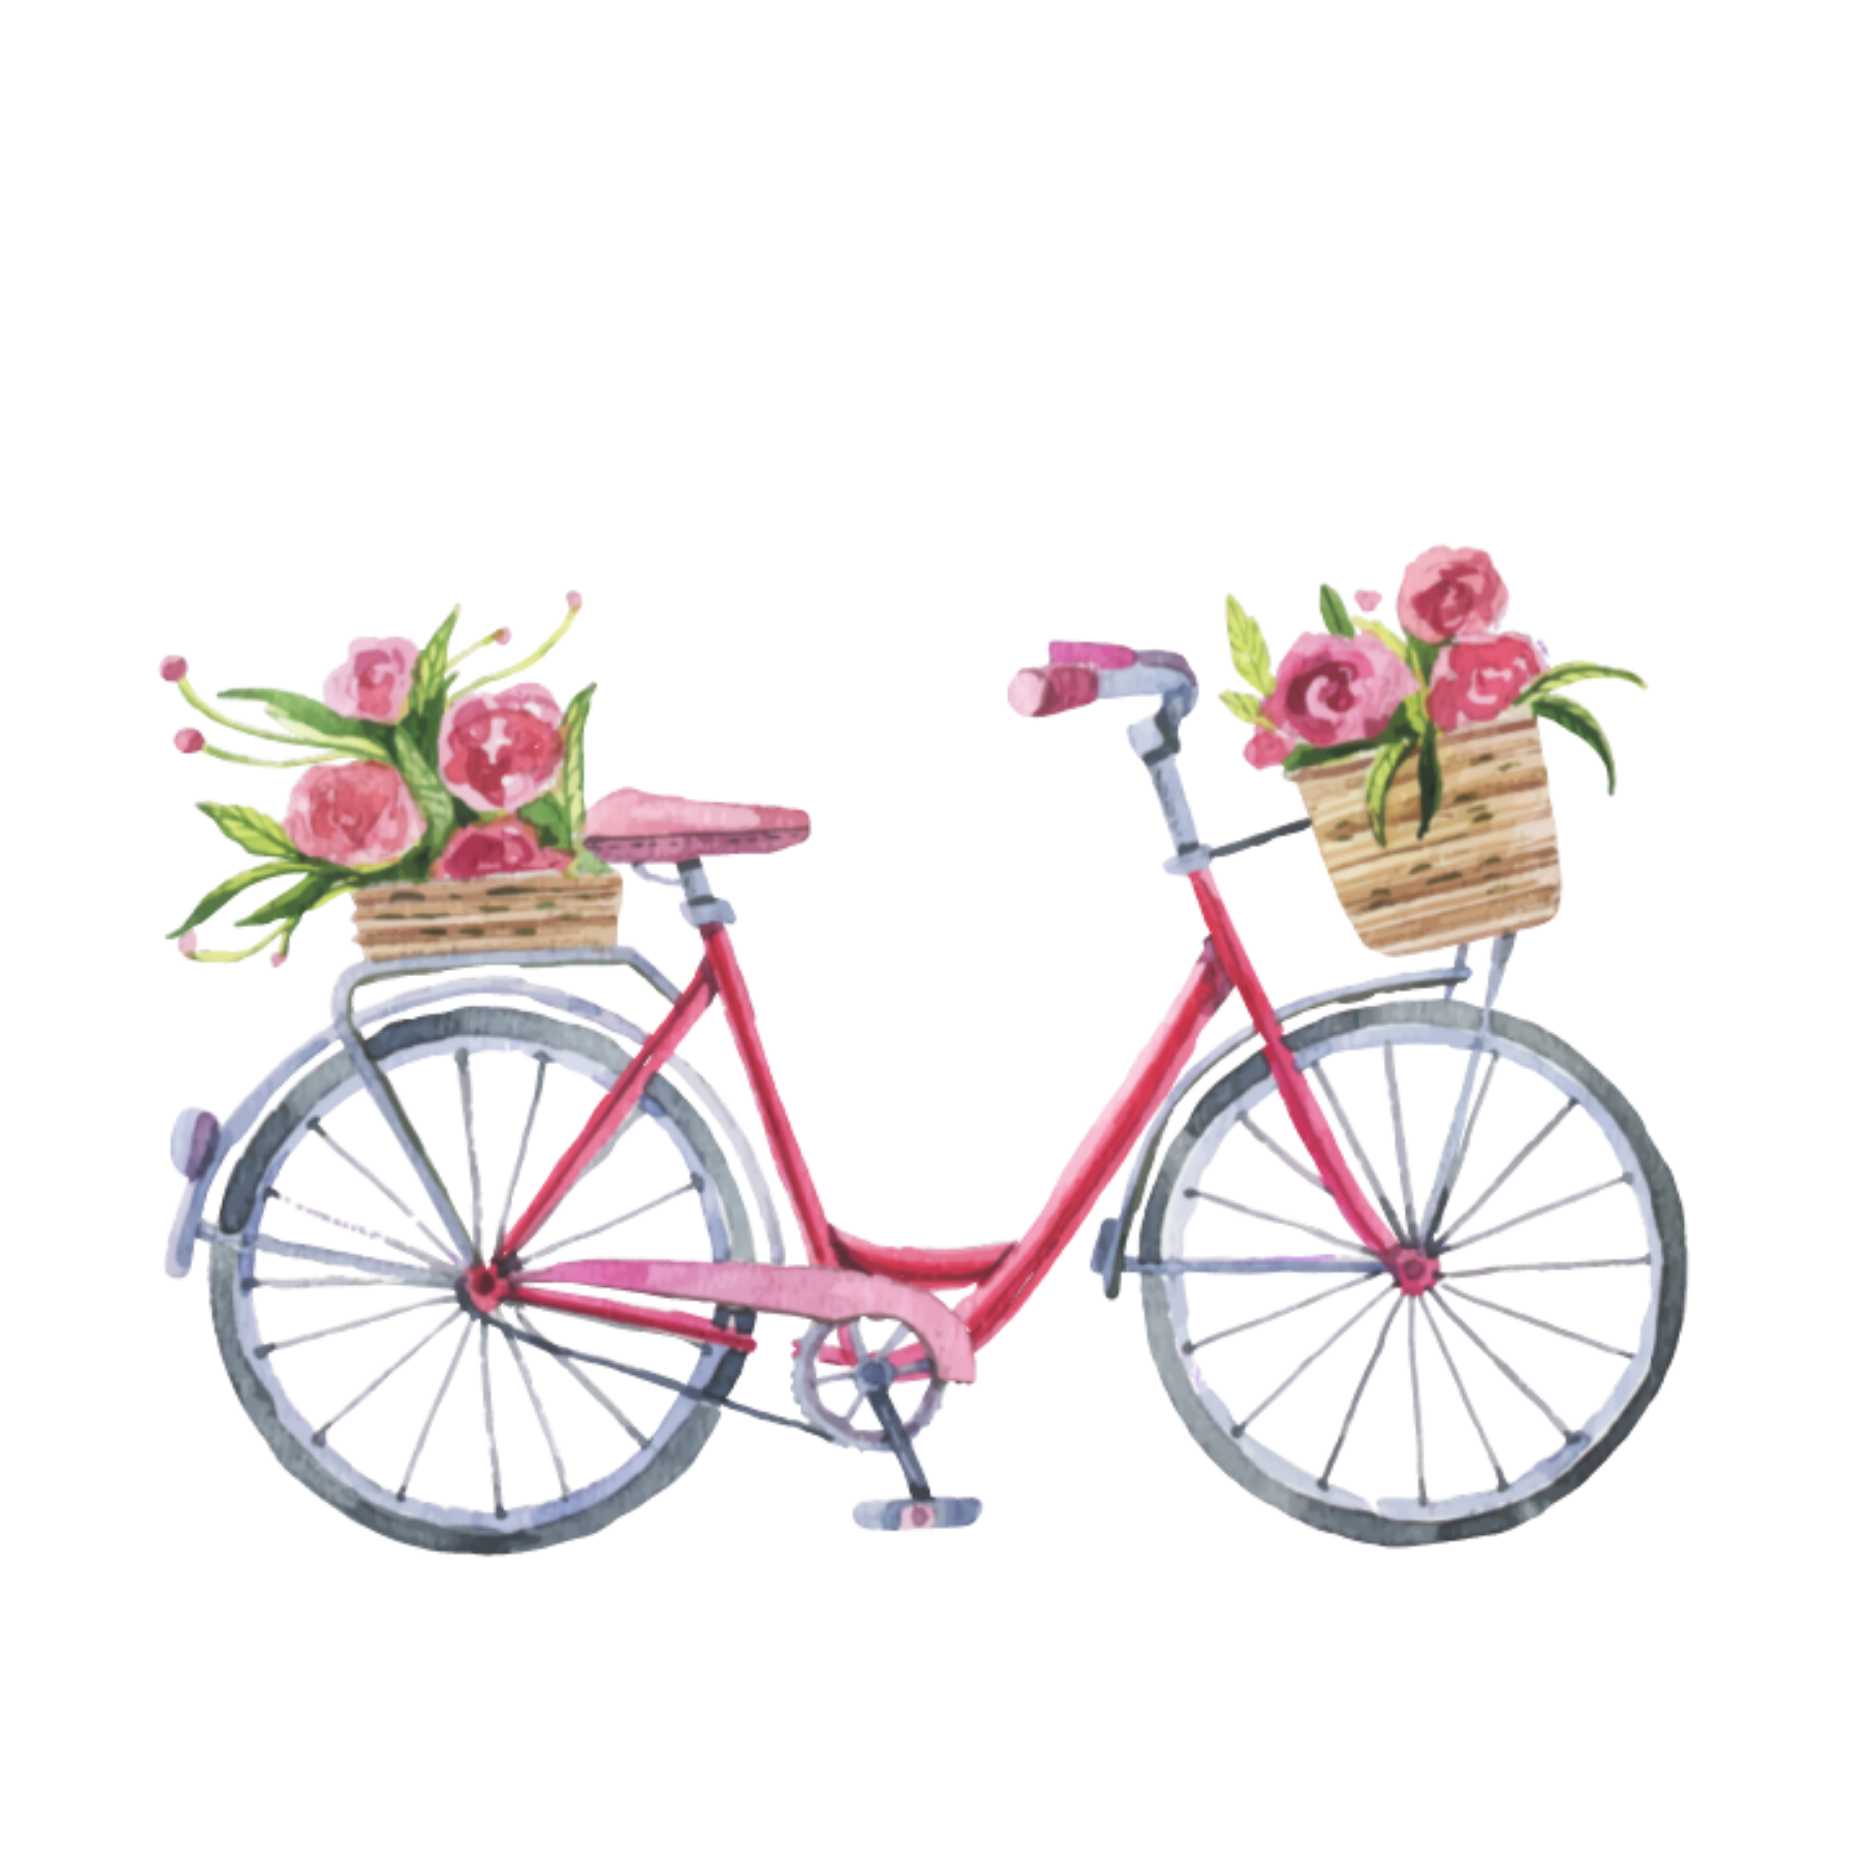 bike bicicleta floral freetoedit sticker by @simonersan